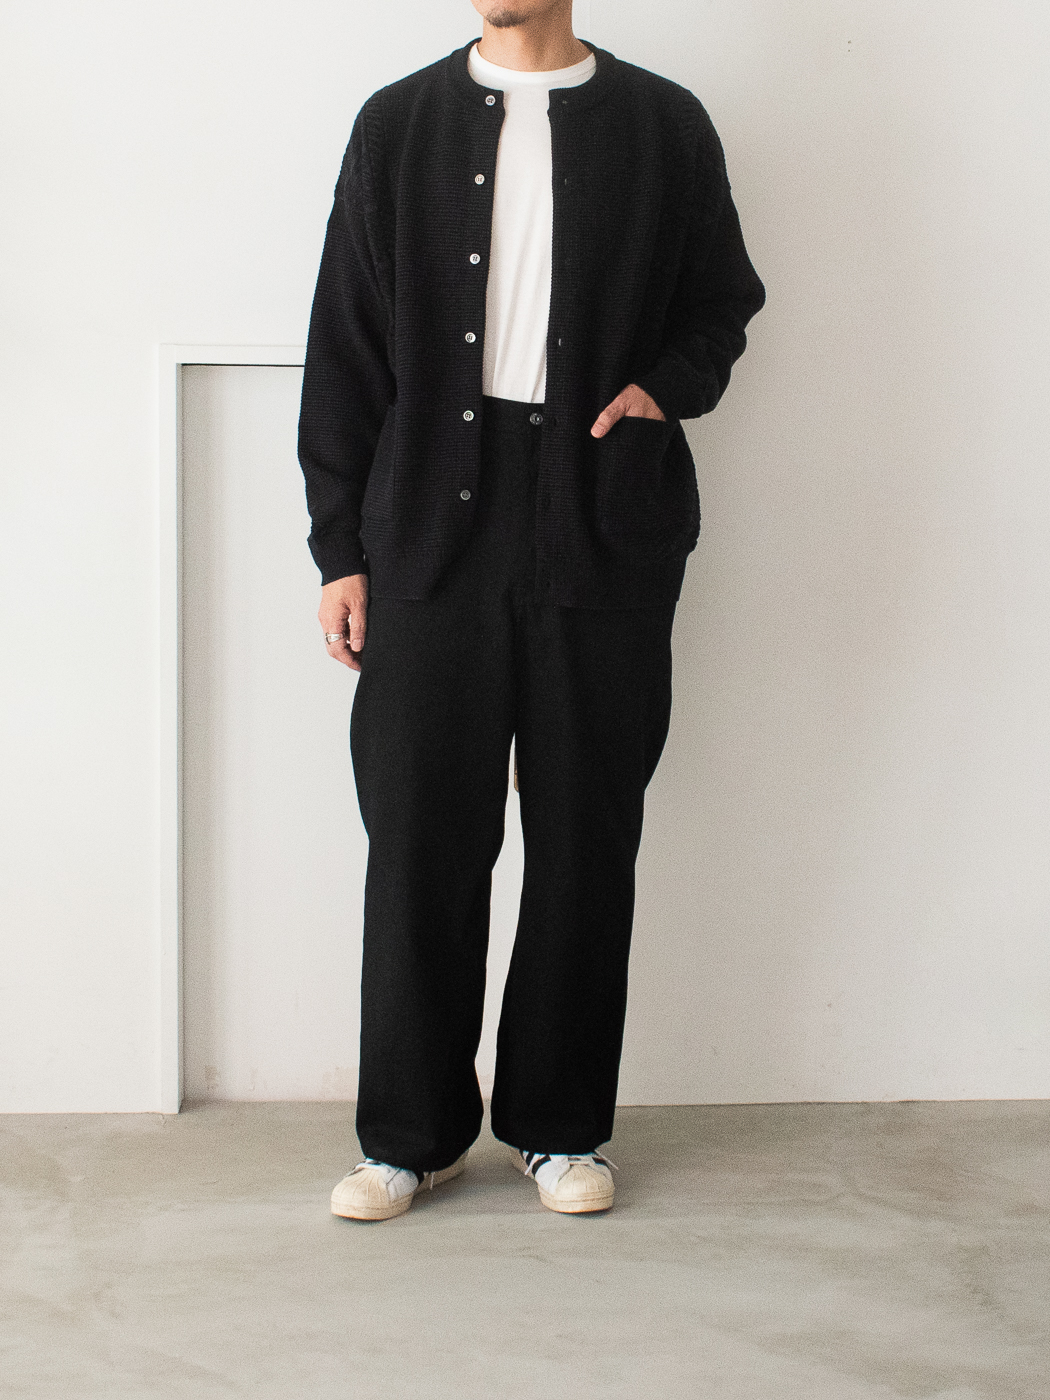 YASHIKI ヤシキ Shigure Cardigan BLACK サイズ2 www.krzysztofbialy.com